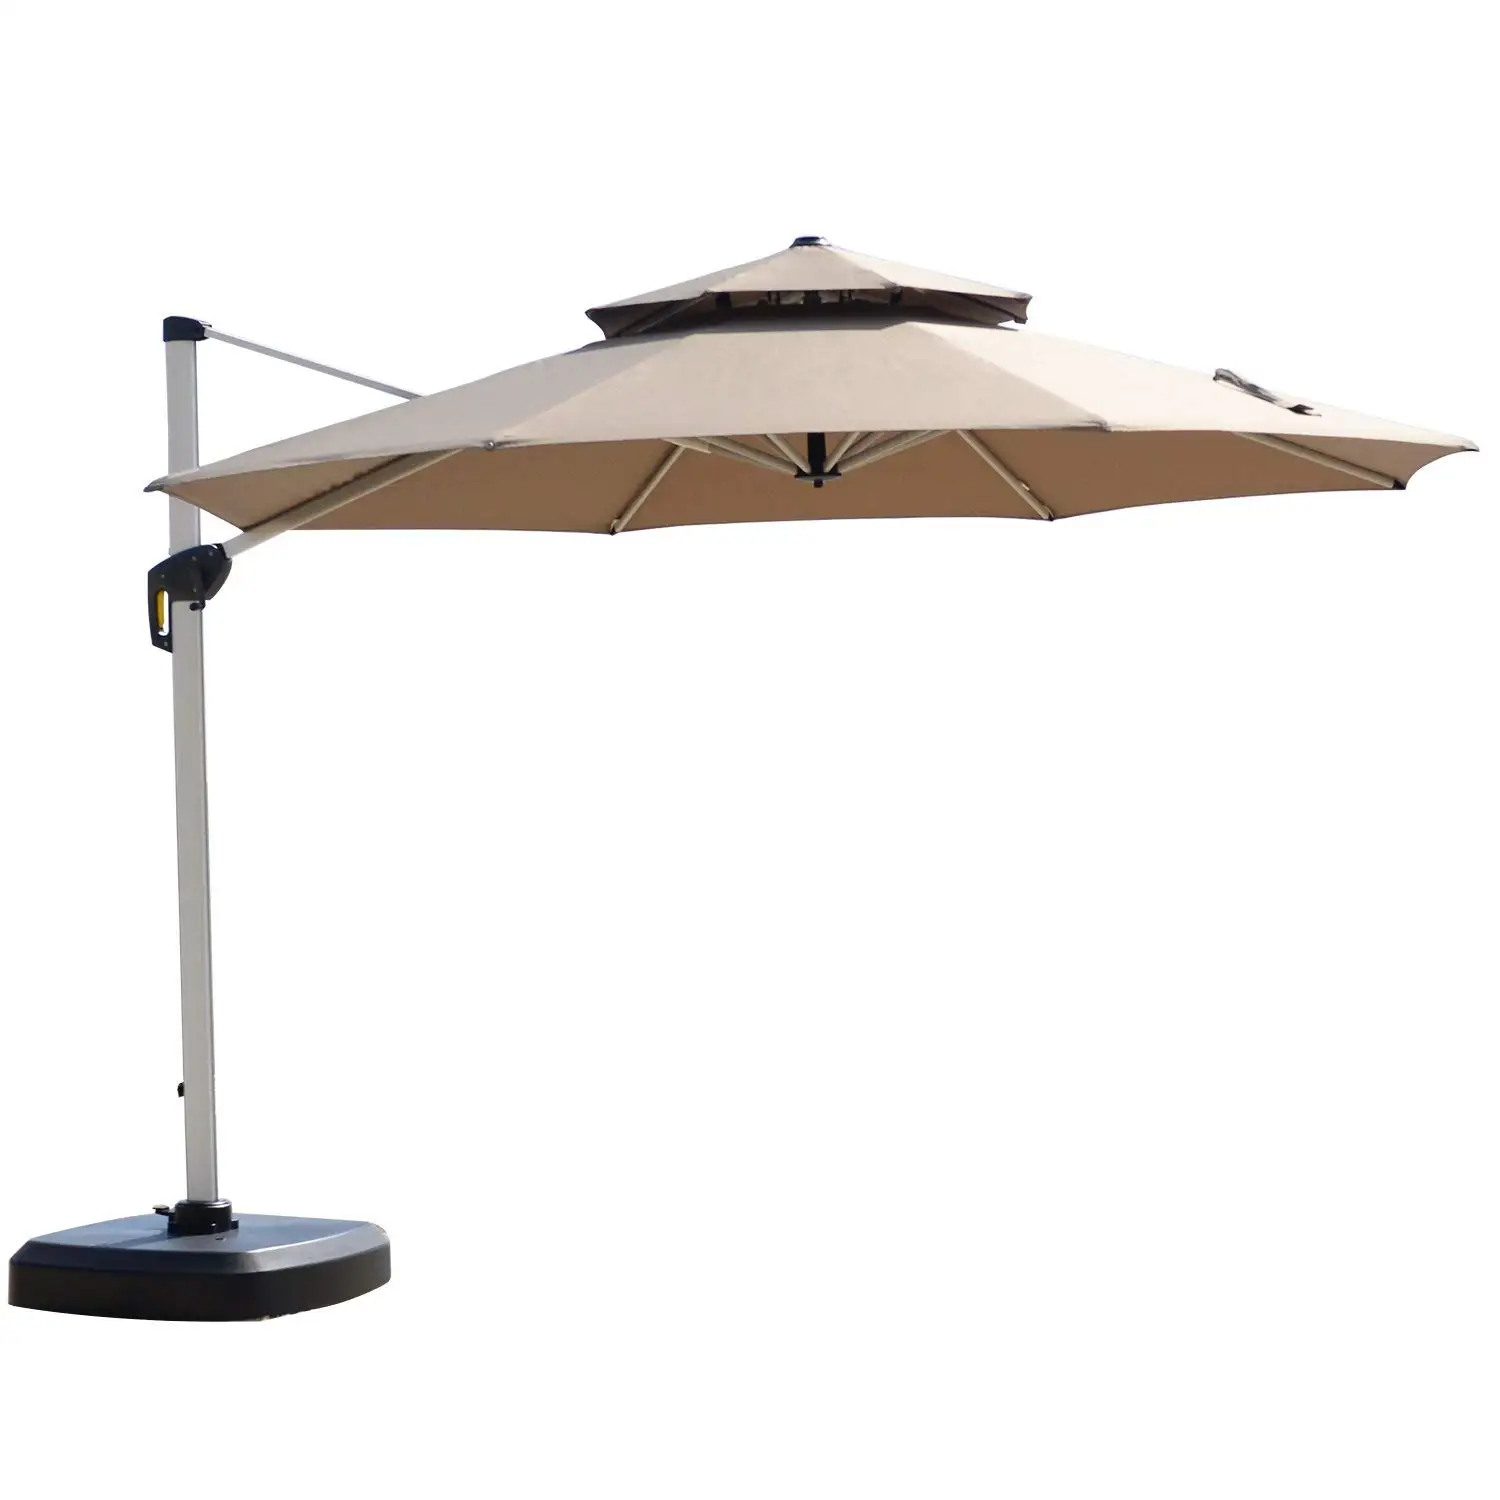 Creative Beach Bali Style Large Size Outdoor Leisure Garden Umbrella